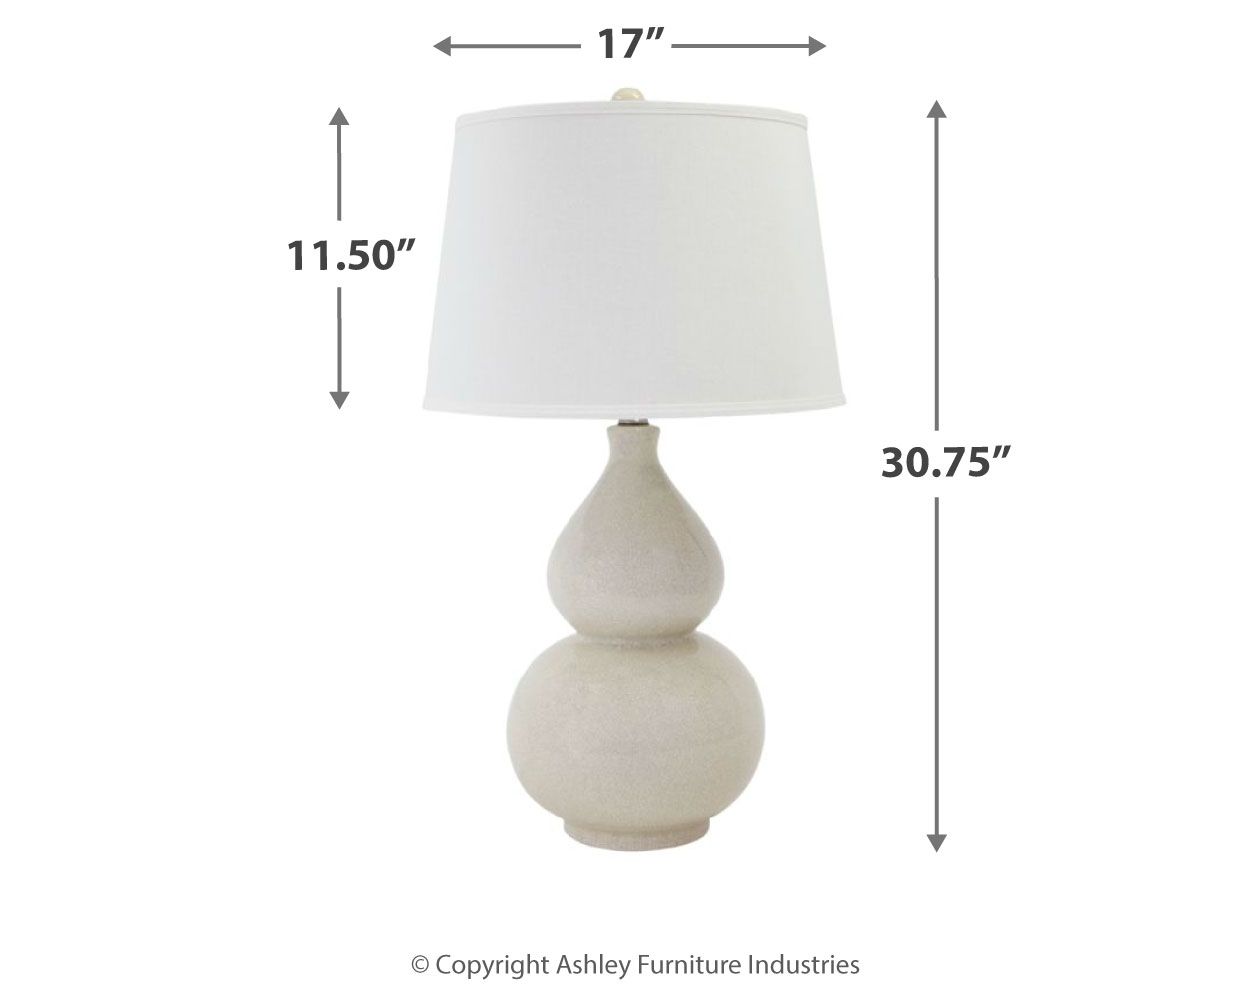 Saffi Cream - Ceramic Table Lamp